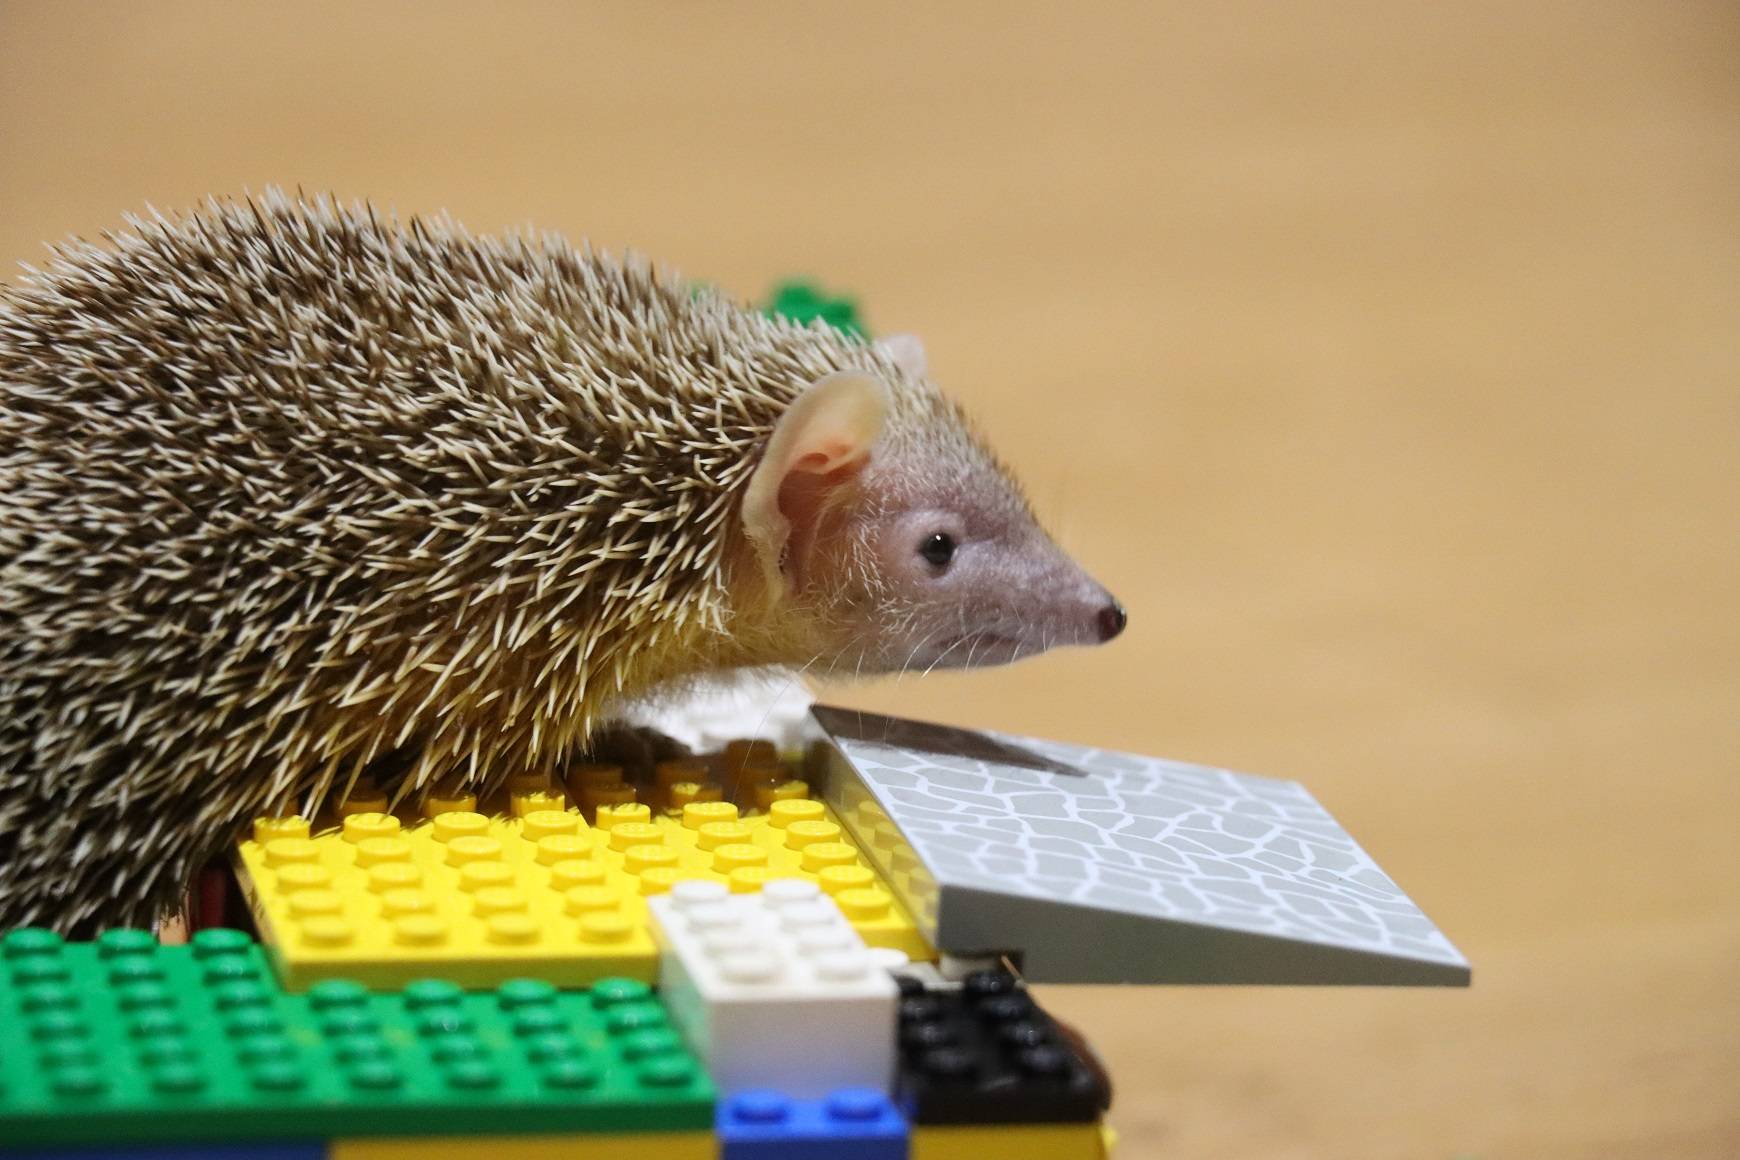 Hedgehog on bricks